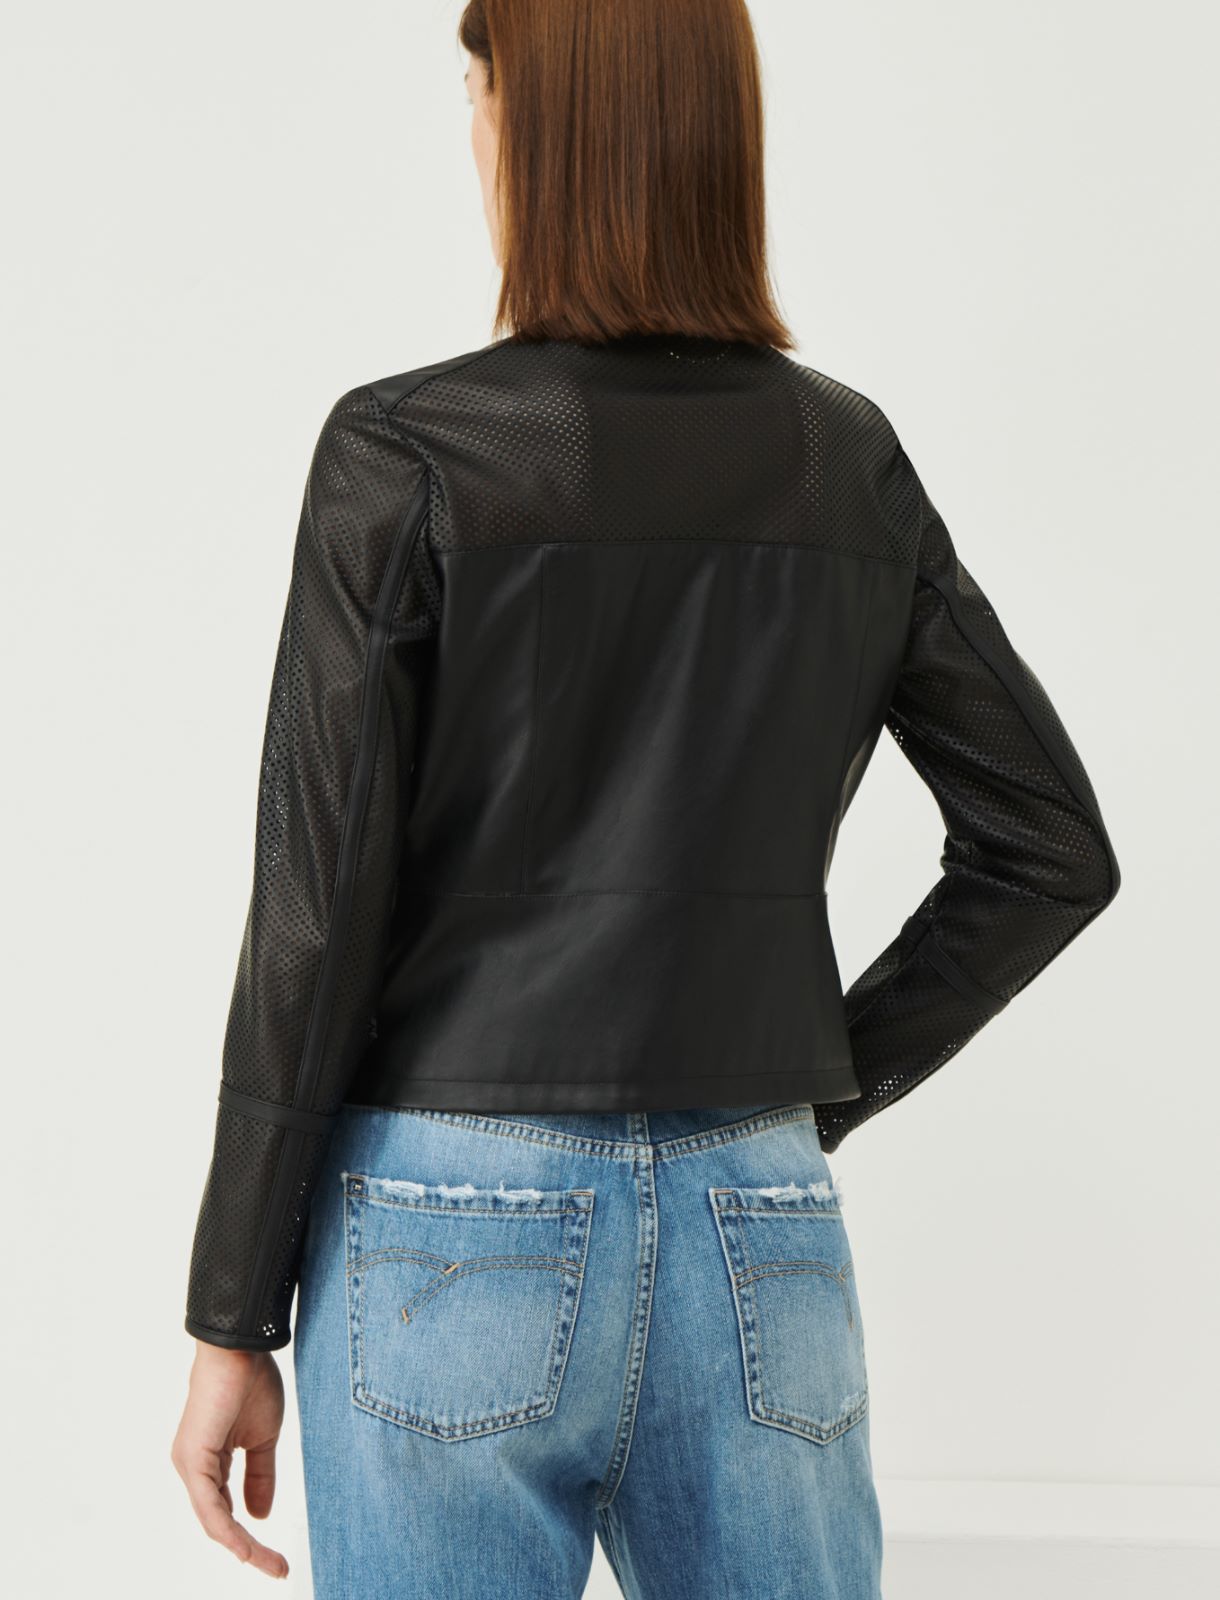 Semi-fitted jacket - Black - Marina Rinaldi - 2